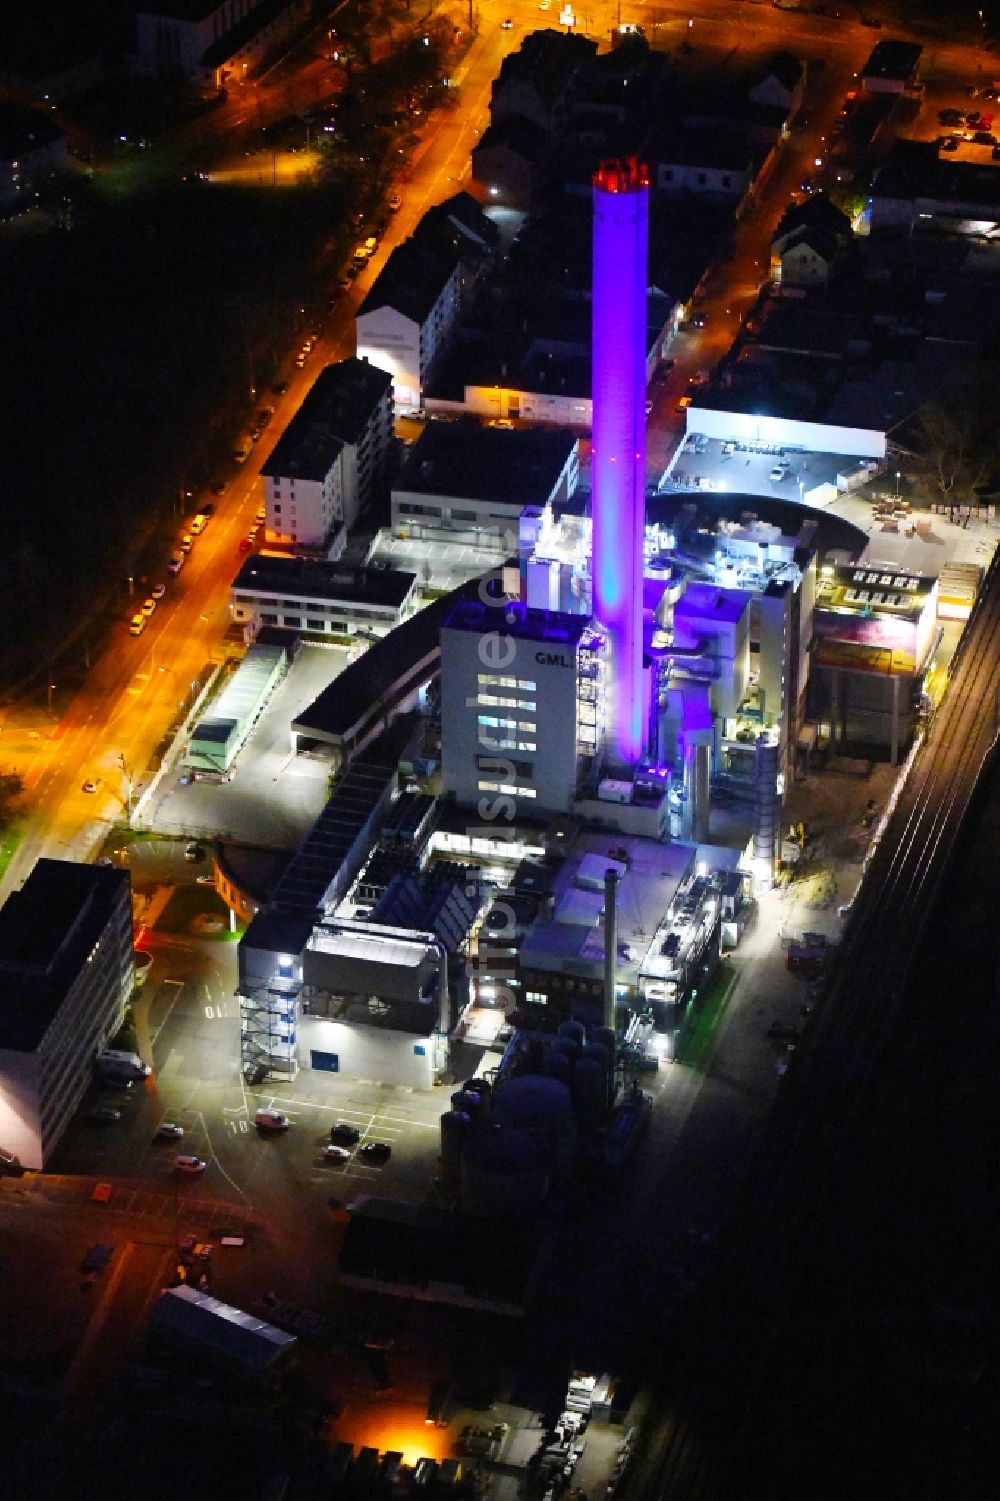 Nacht-Luftaufnahme Ludwigshafen am Rhein - Nachtluftbild Kraftwerksanlagen des GML – Gemeinschafts-Müllheizkraftwerk in Ludwigshafen am Rhein im Bundesland Rheinland-Pfalz, Deutschland